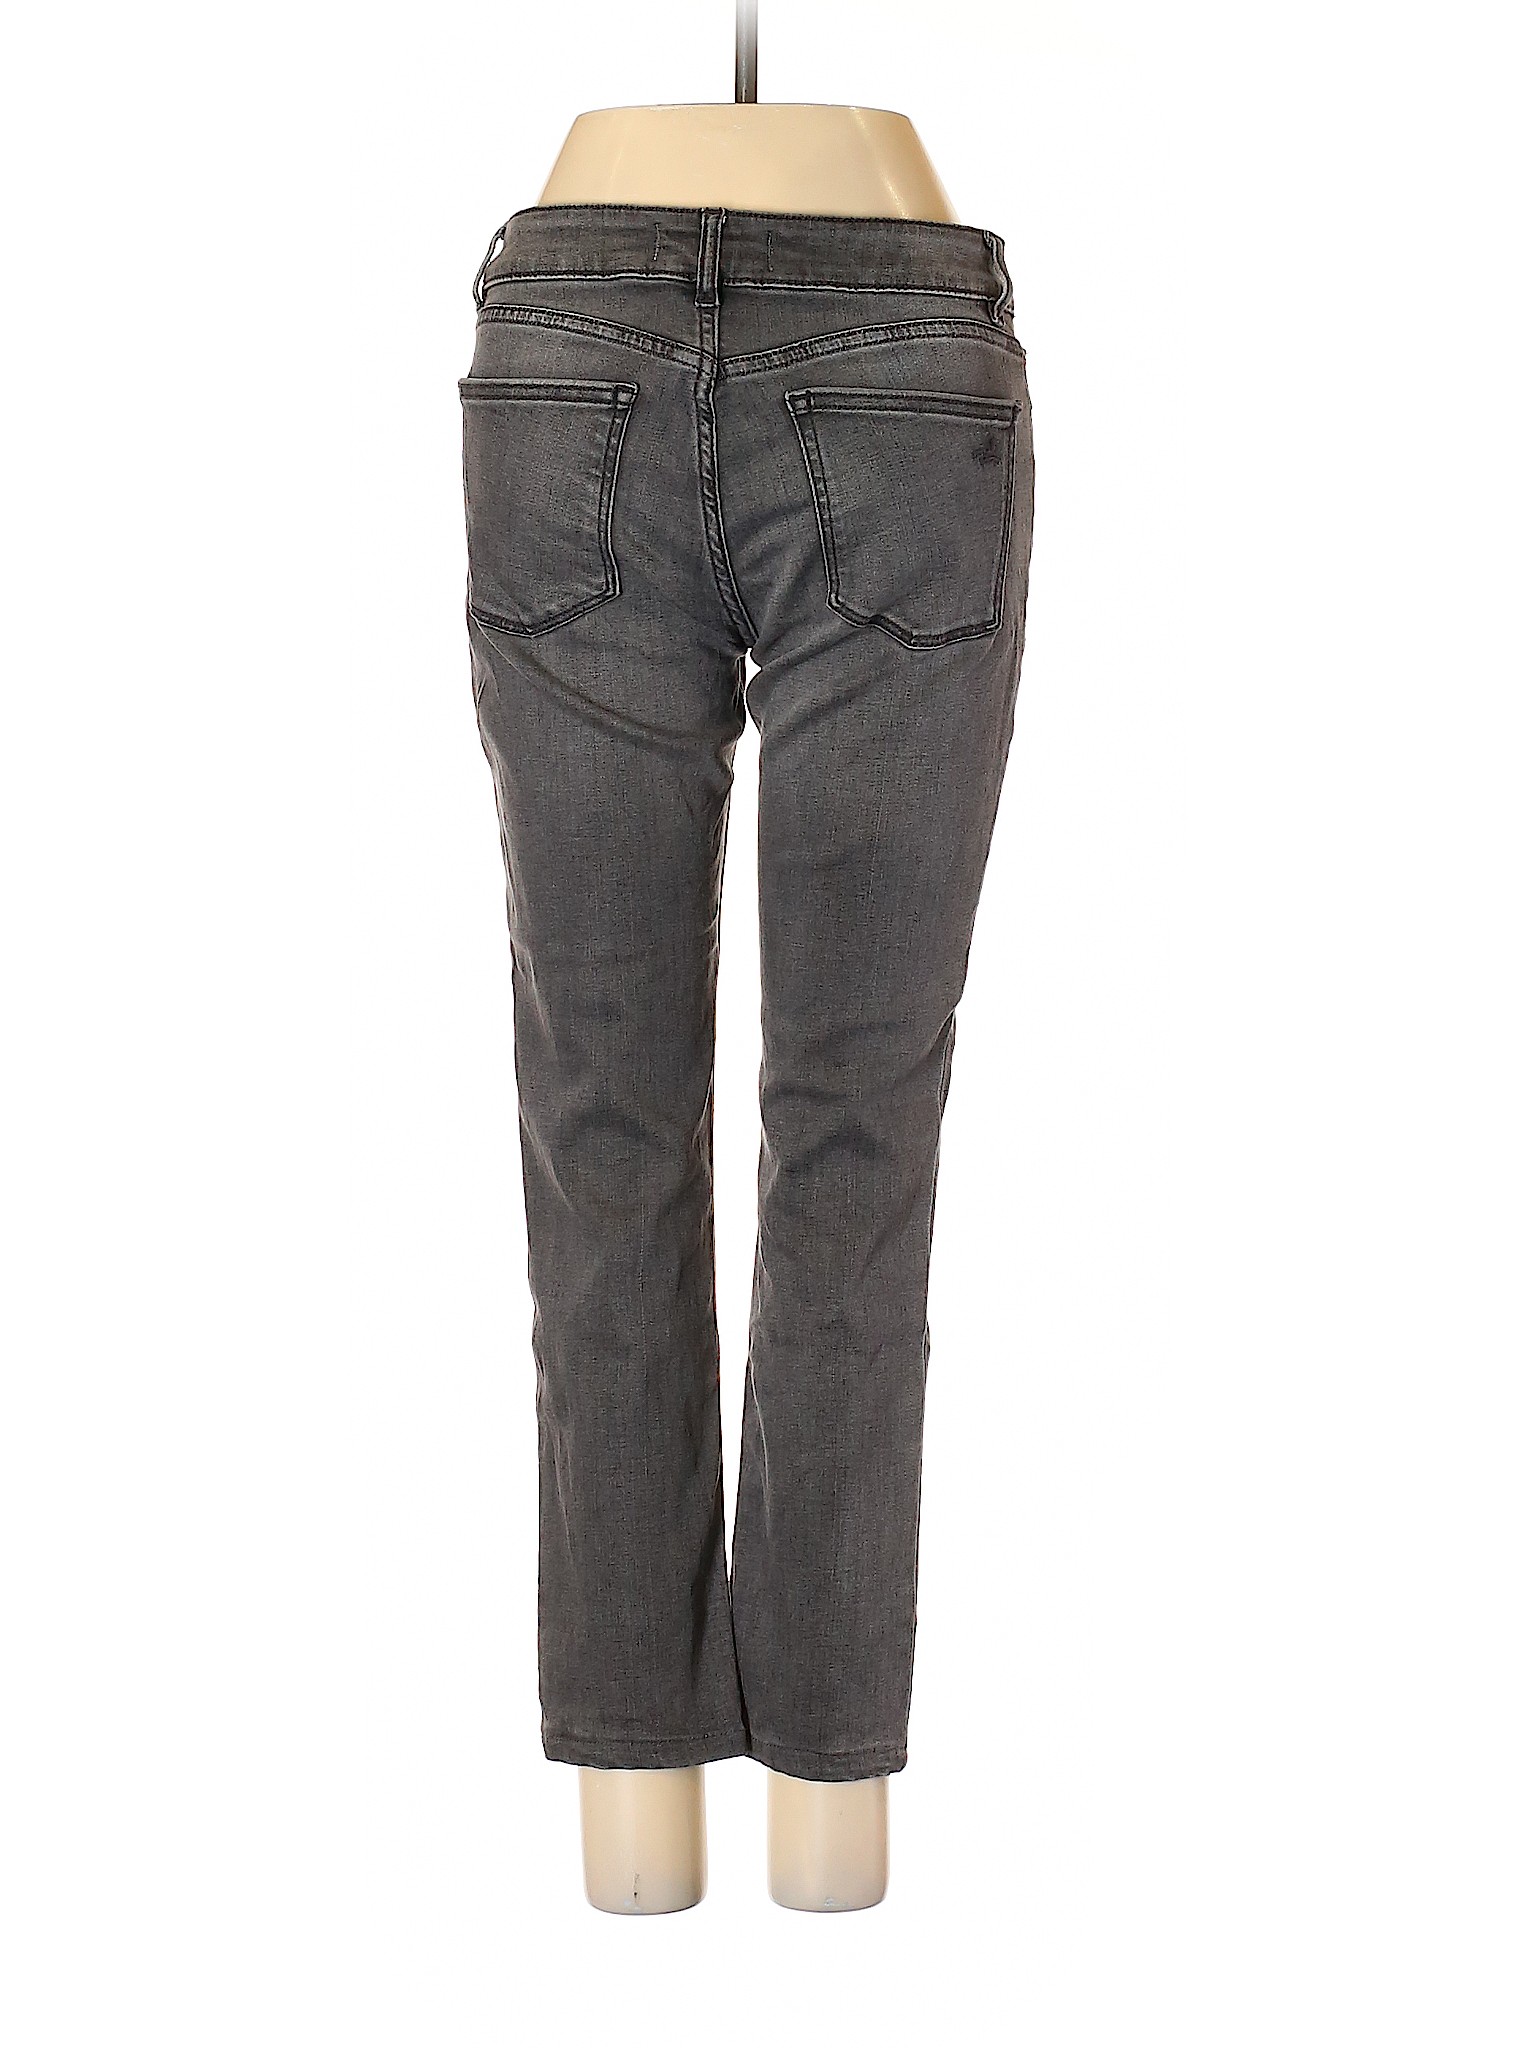 DL1961 Women Gray Jeans 25W | eBay